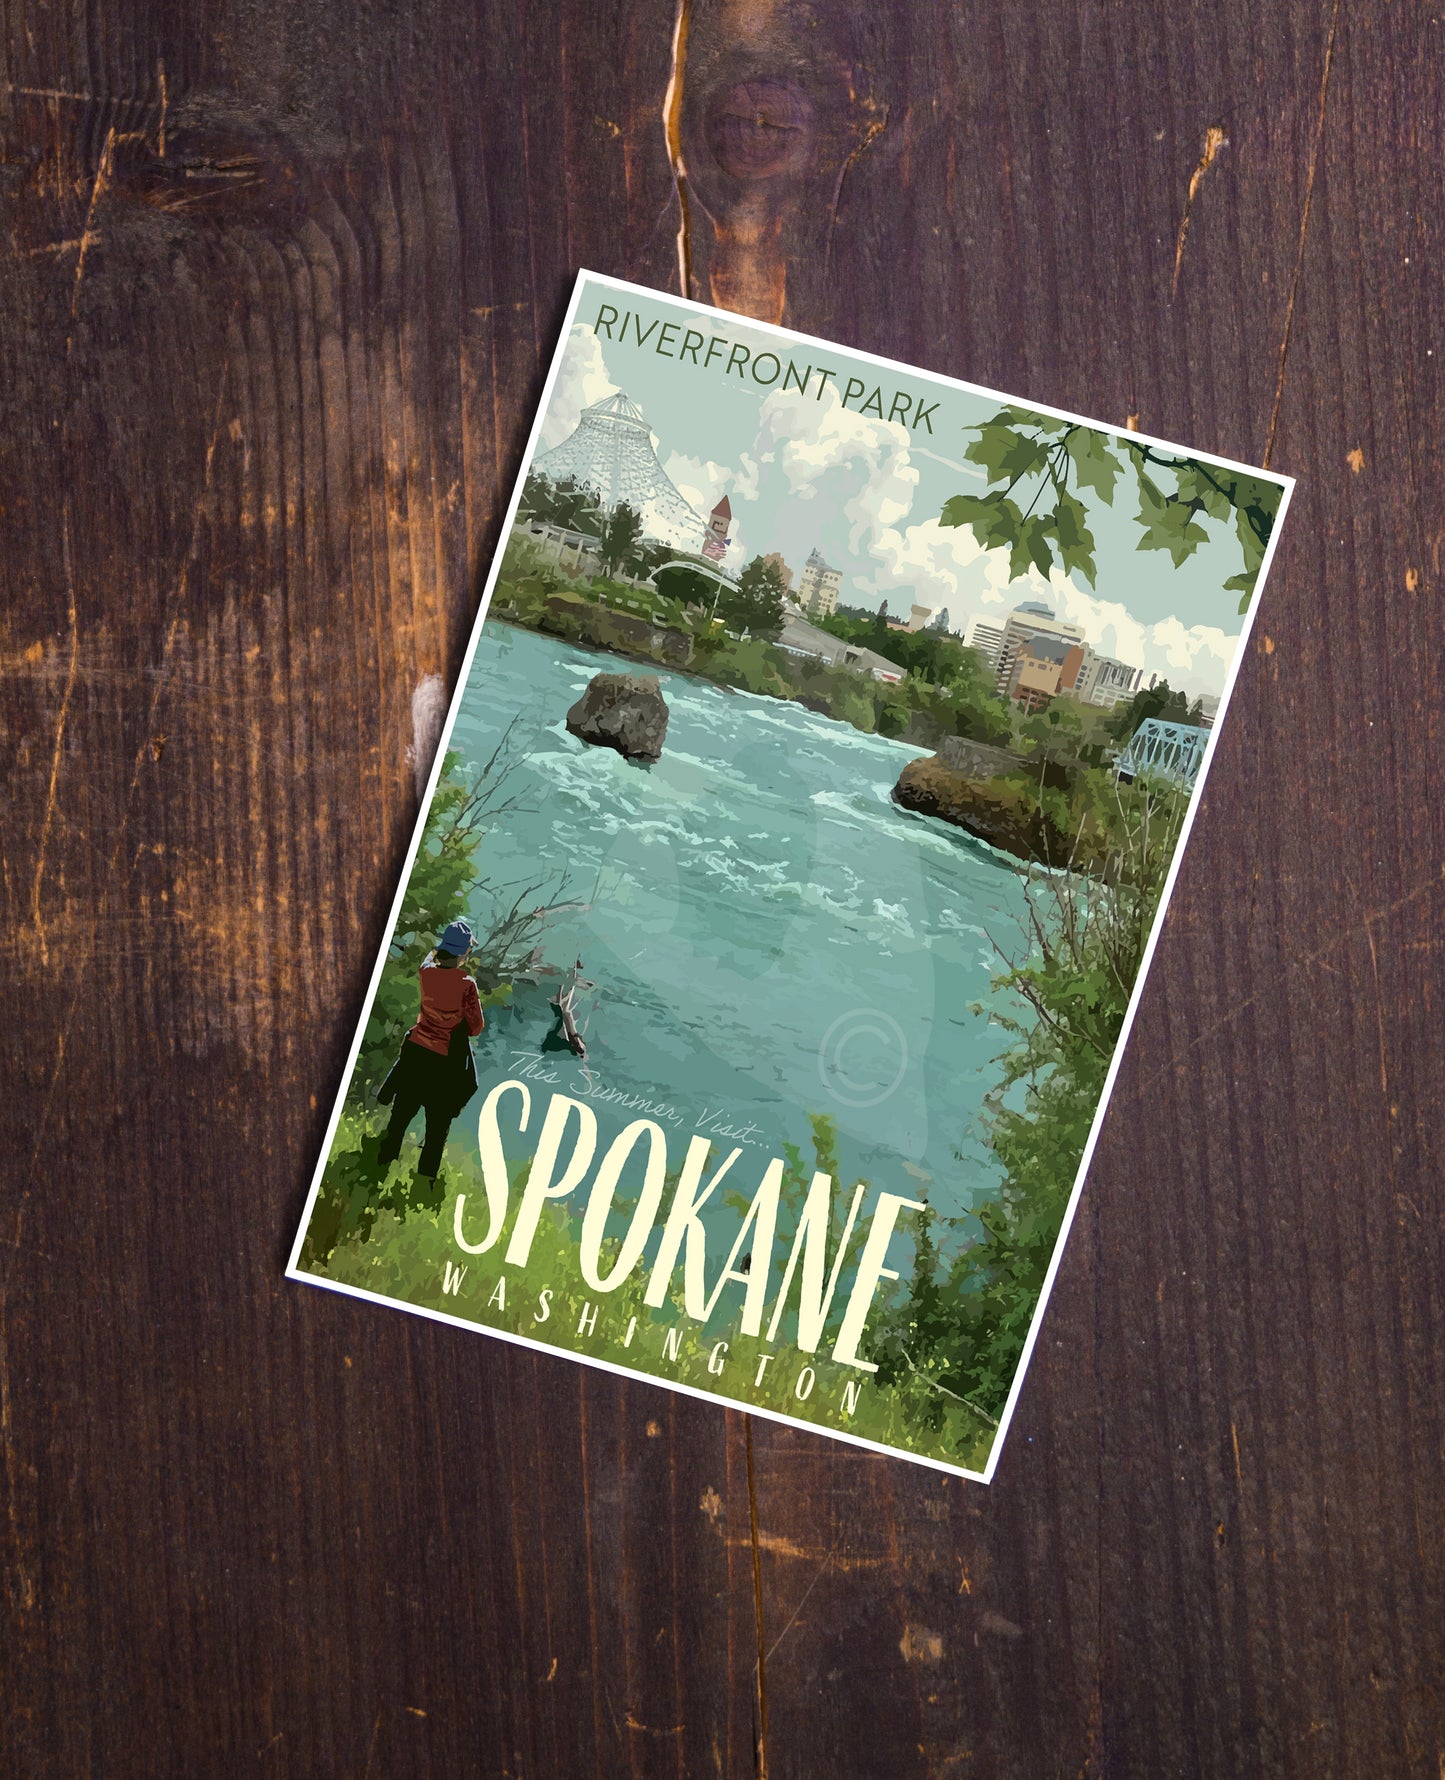 Spokane Washington Poster, Spokane Riverfront Park Print, Spokane Falls Vintage Style Travel Art